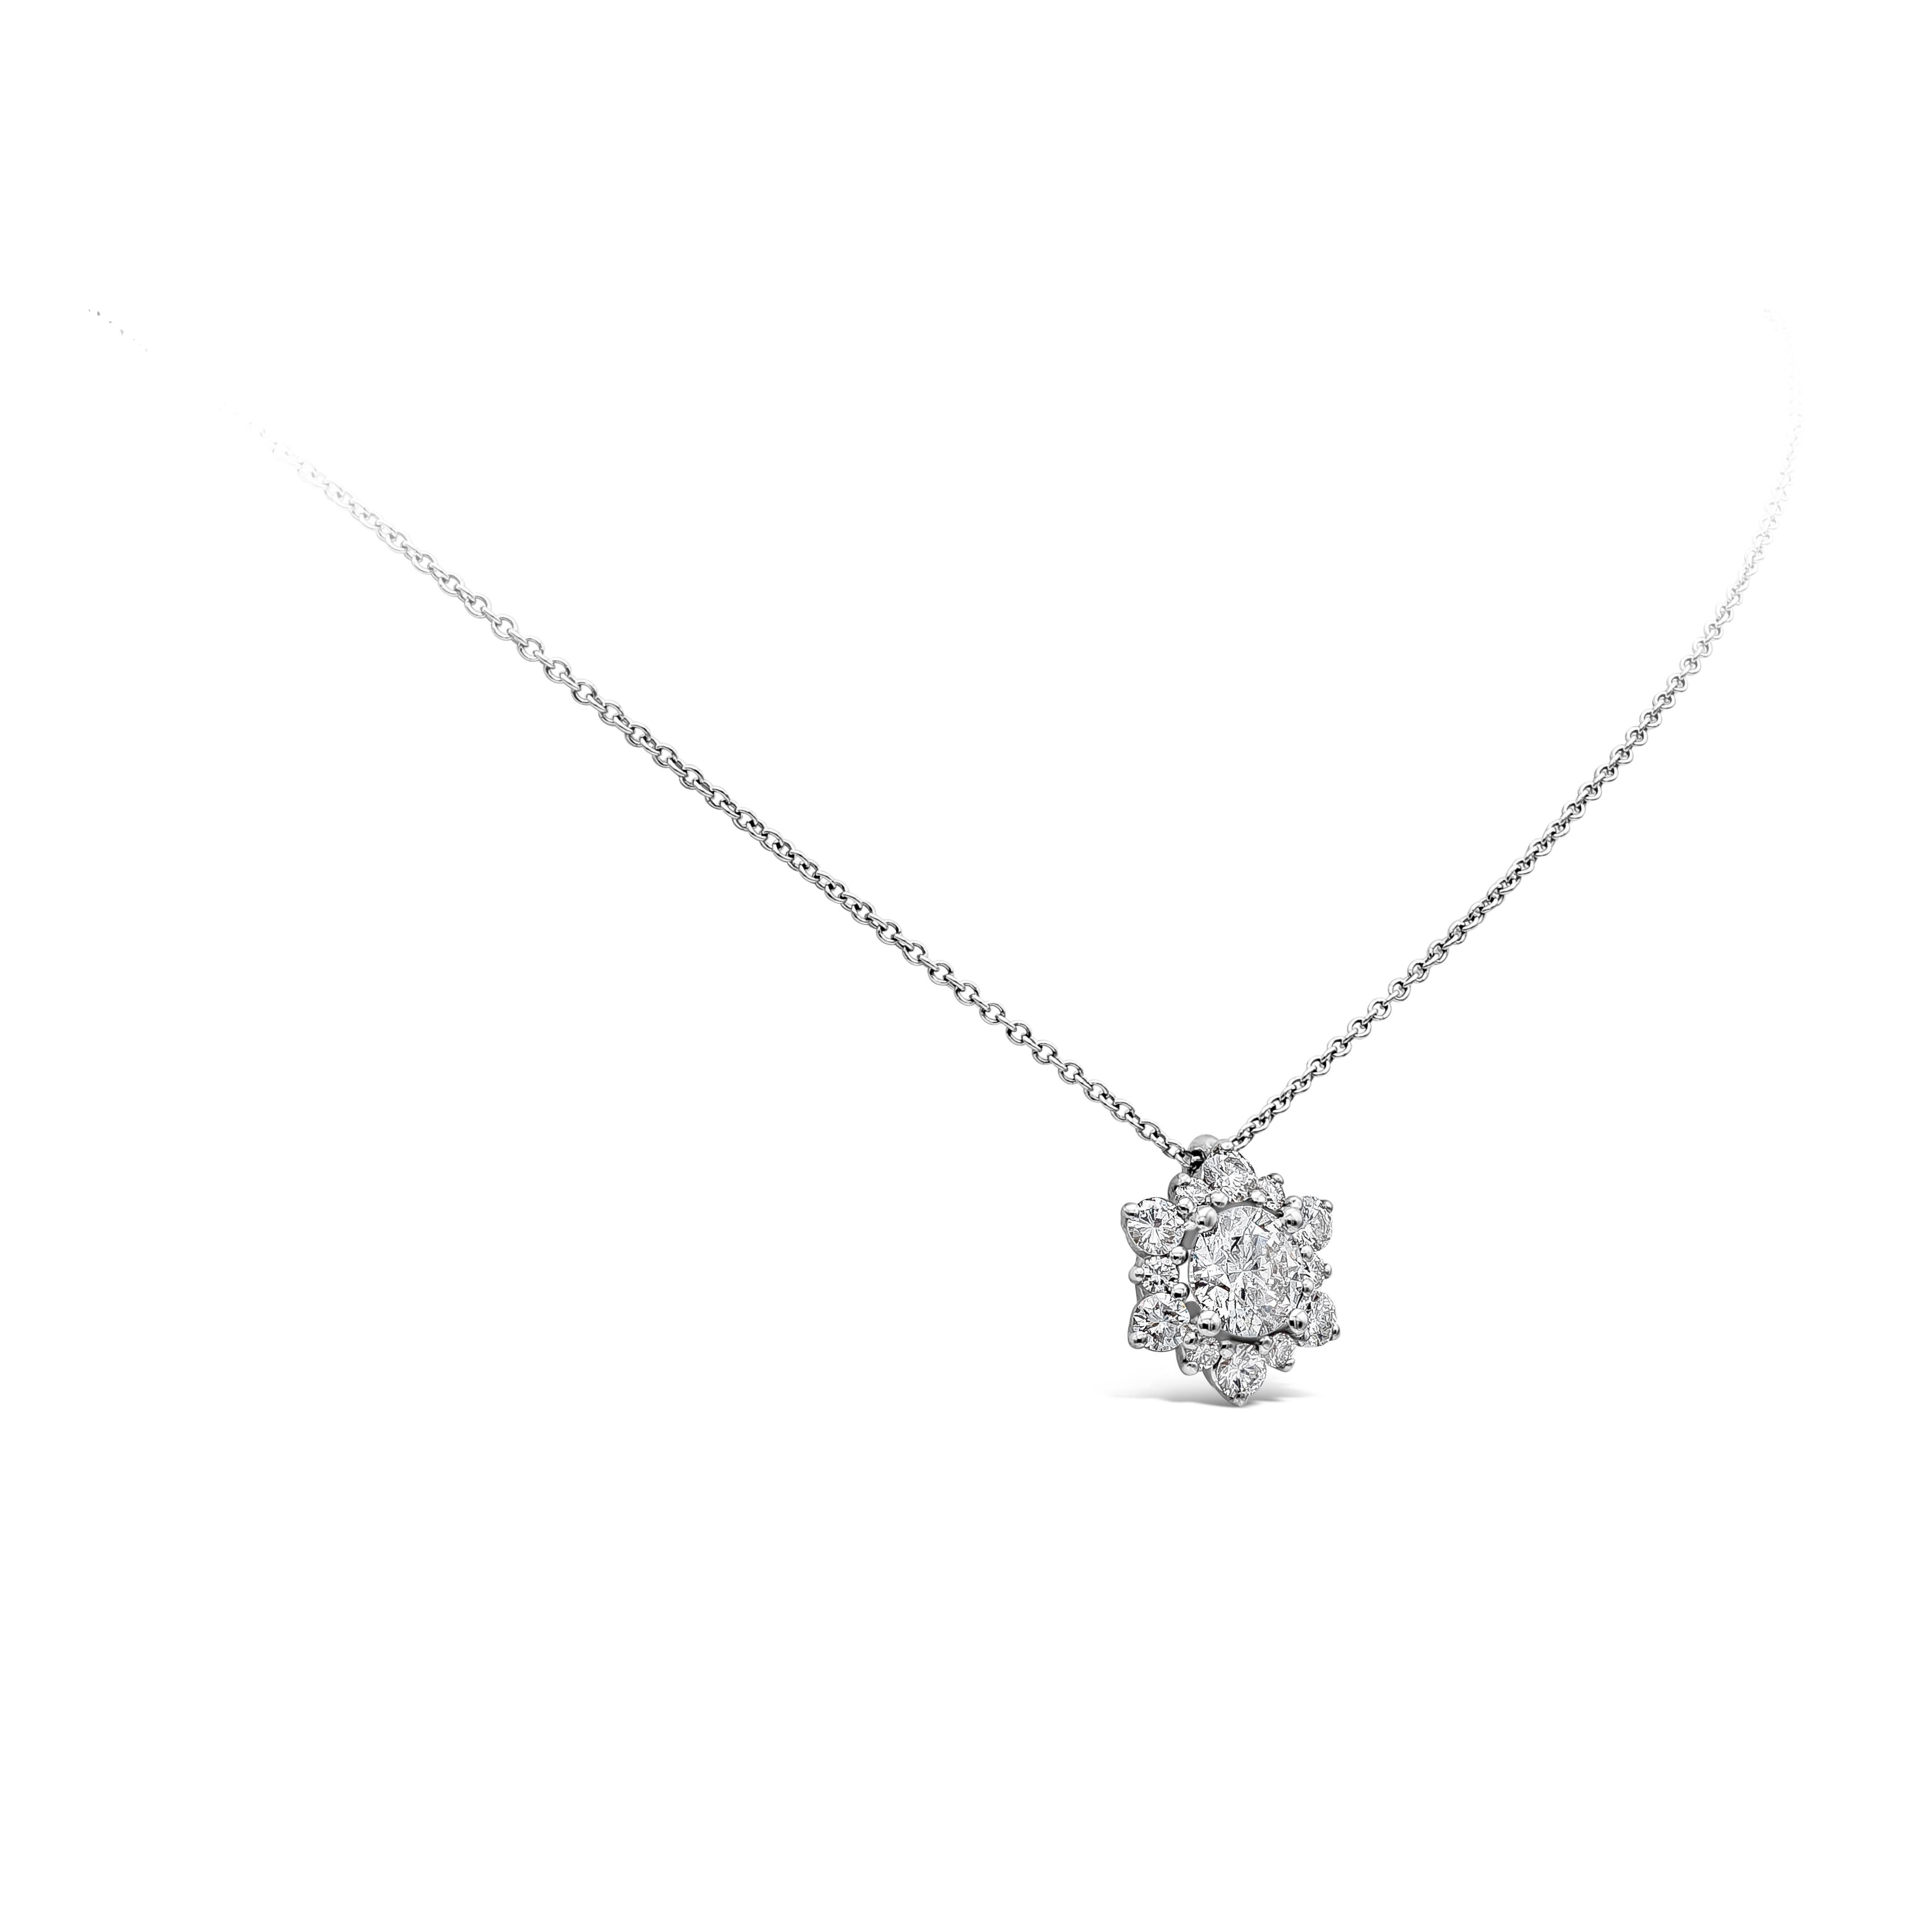 Ce collier pendentif simple et époustouflant met en valeur un diamant rond de 0,76 carats au centre, entouré de diamants éblouissants pesant 0,49 carats au total, dans un halo complexe en forme d'étoile. Finement réalisée en or blanc 18 carats, elle